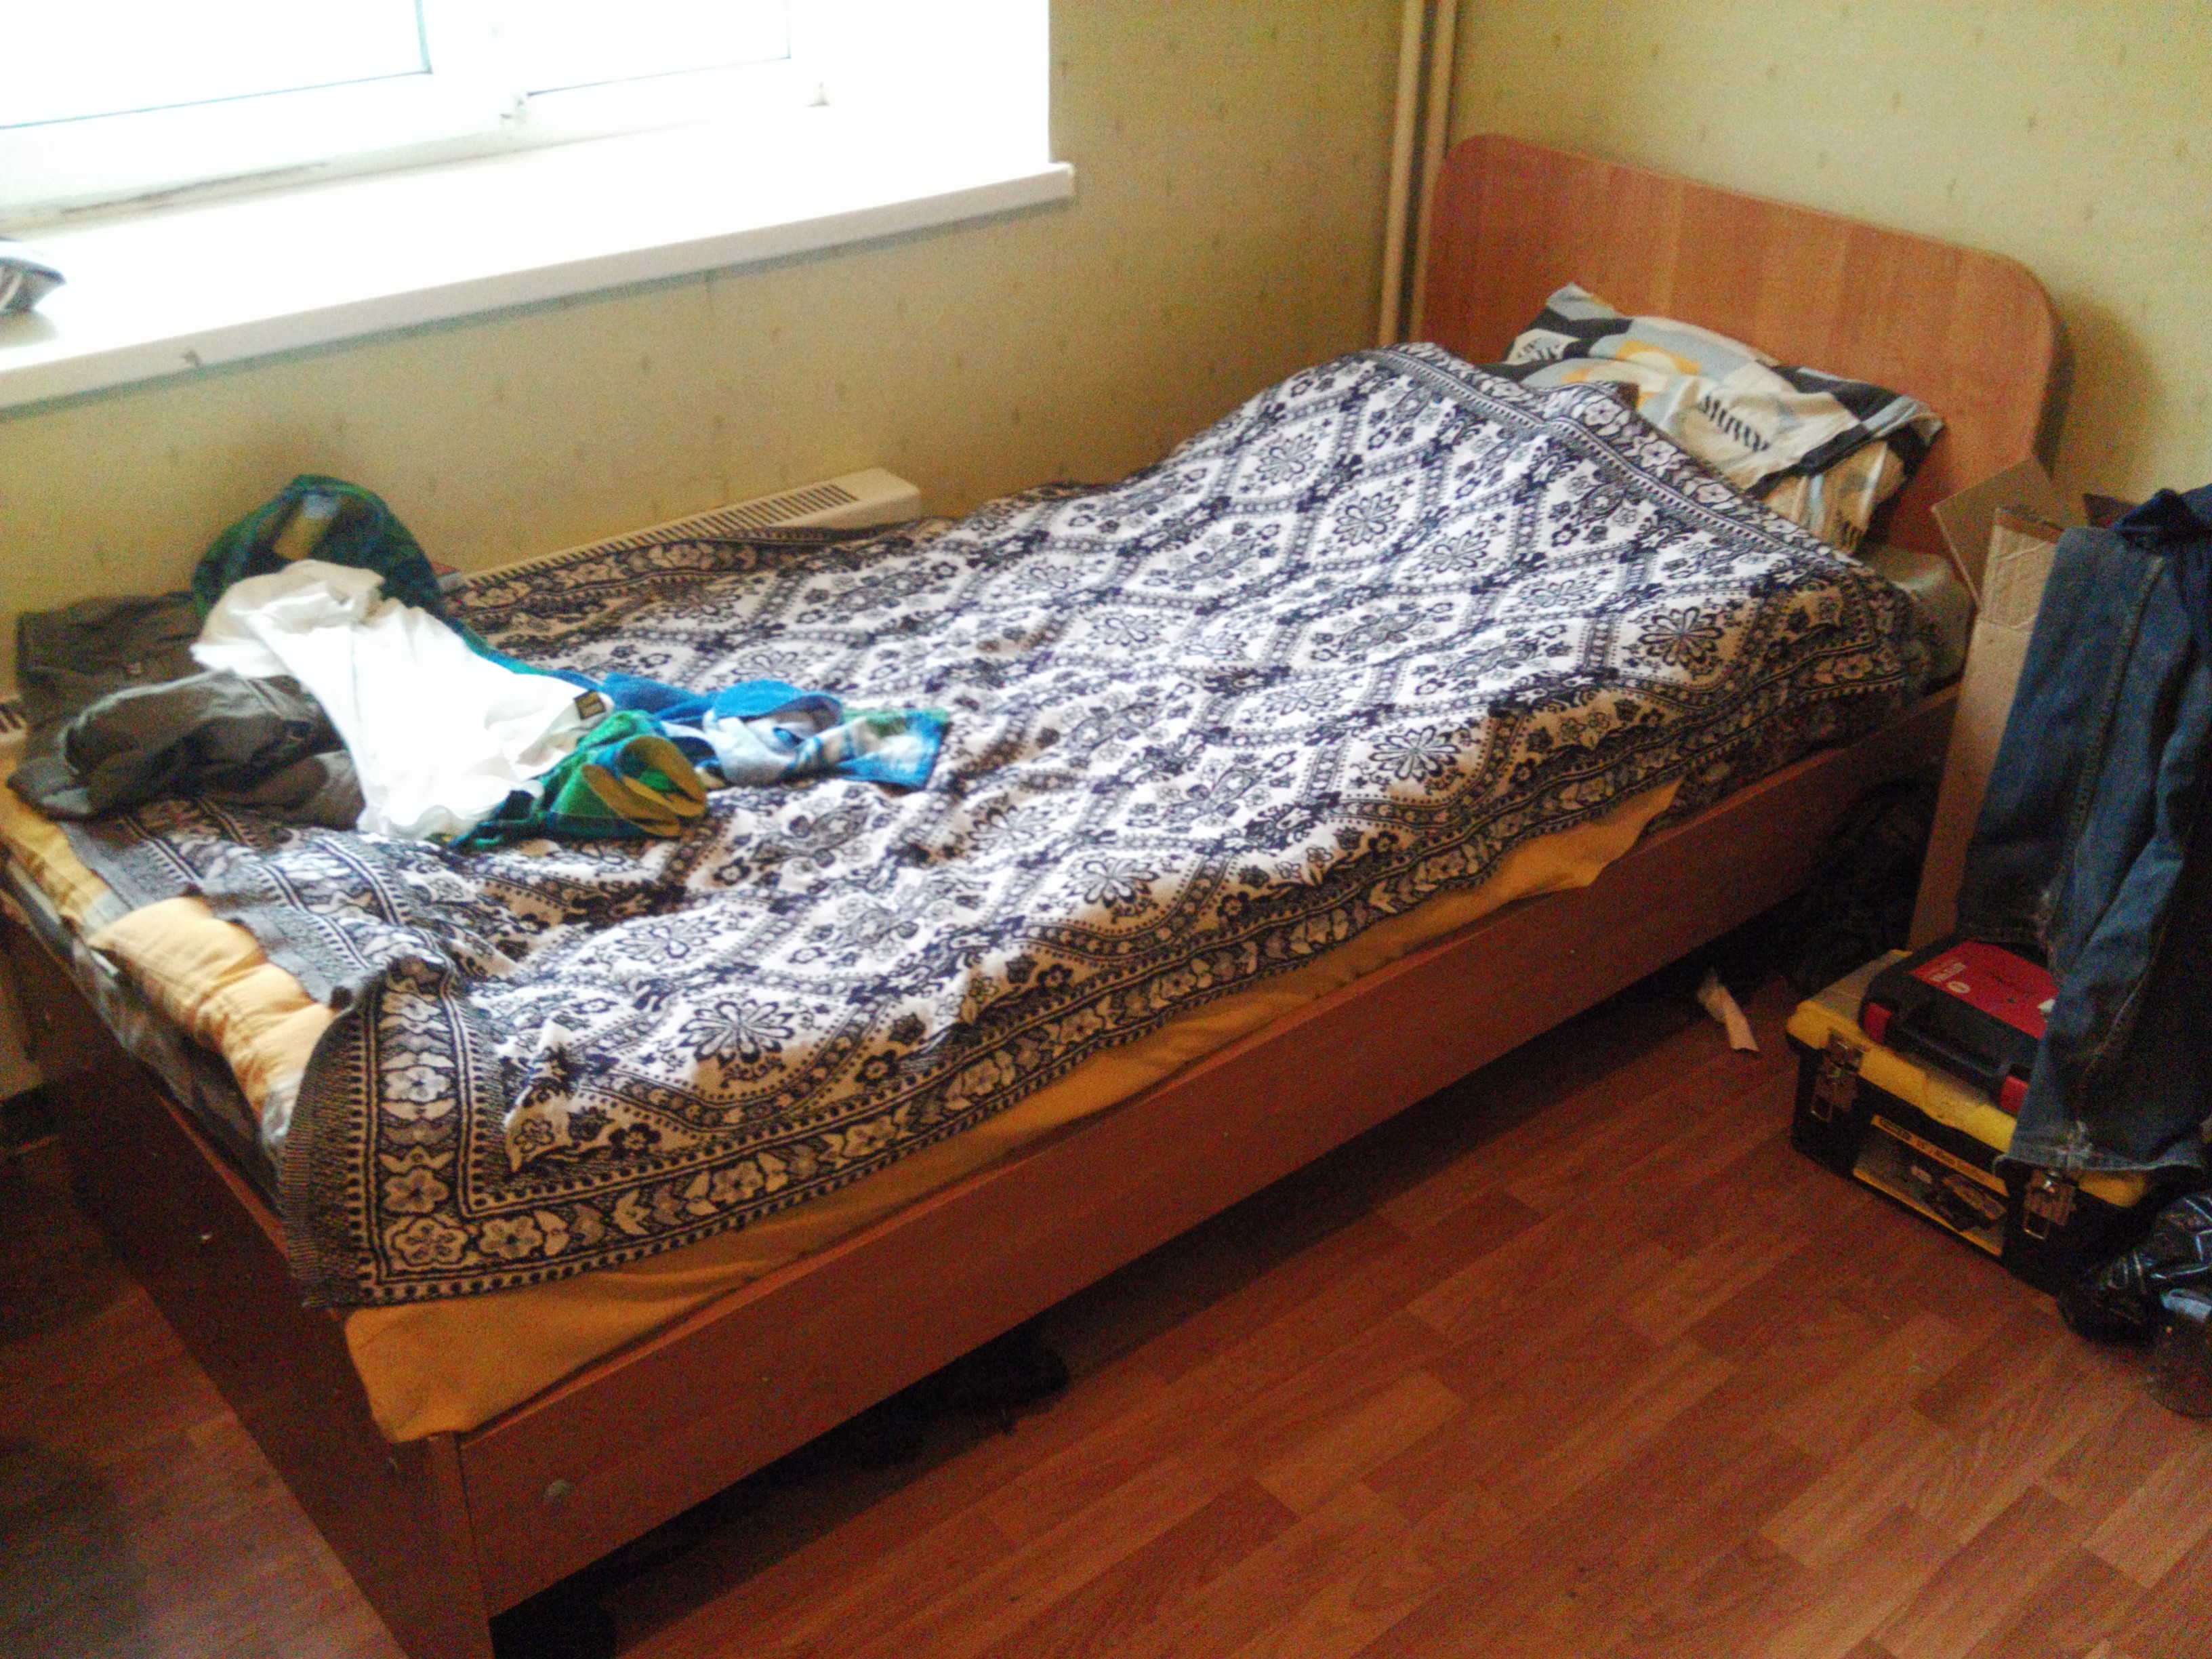 Вечер в общежитии. Кровать в общаге. Кровати для общежитий. Rhjdfnm BP J,OFUB. Комната в общаге и кровать.